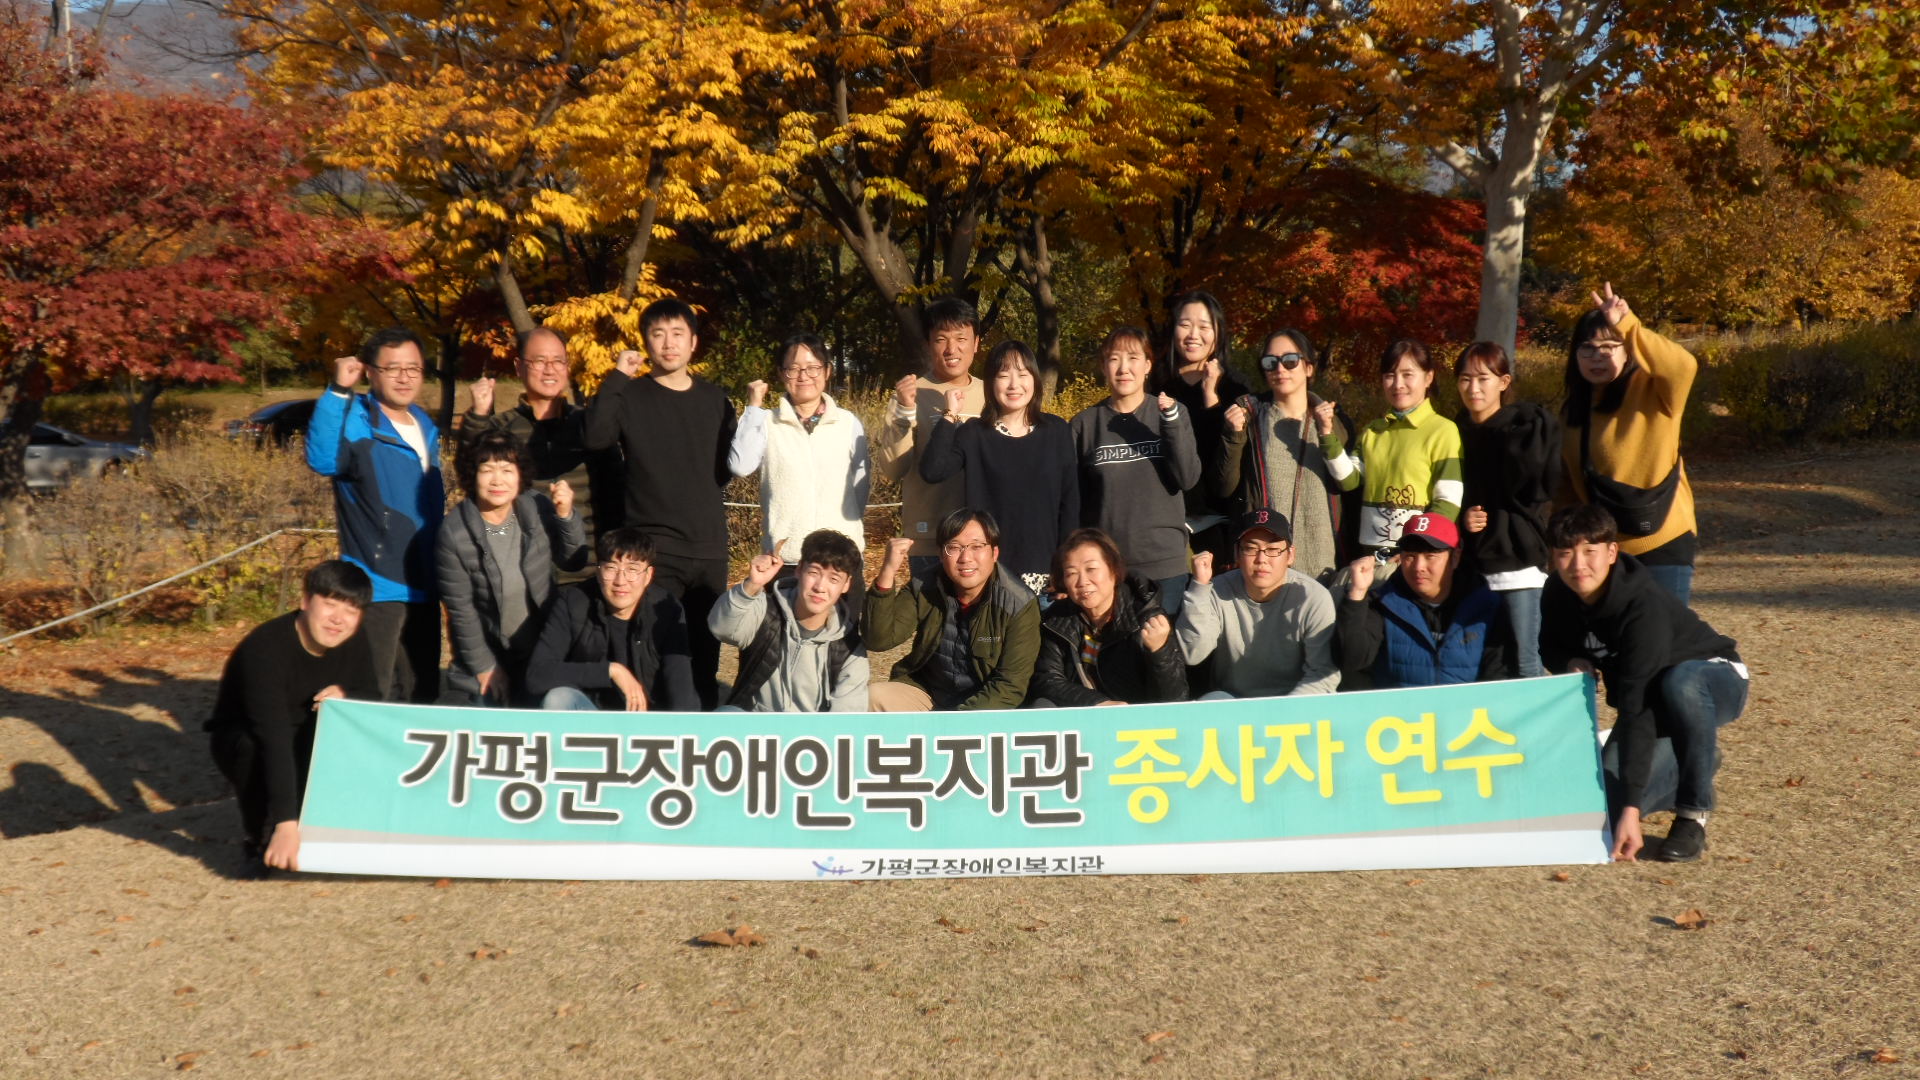 '종사자연수'현수막을 들고 미사리조정경기장 앞에서 단체 기념 사진 